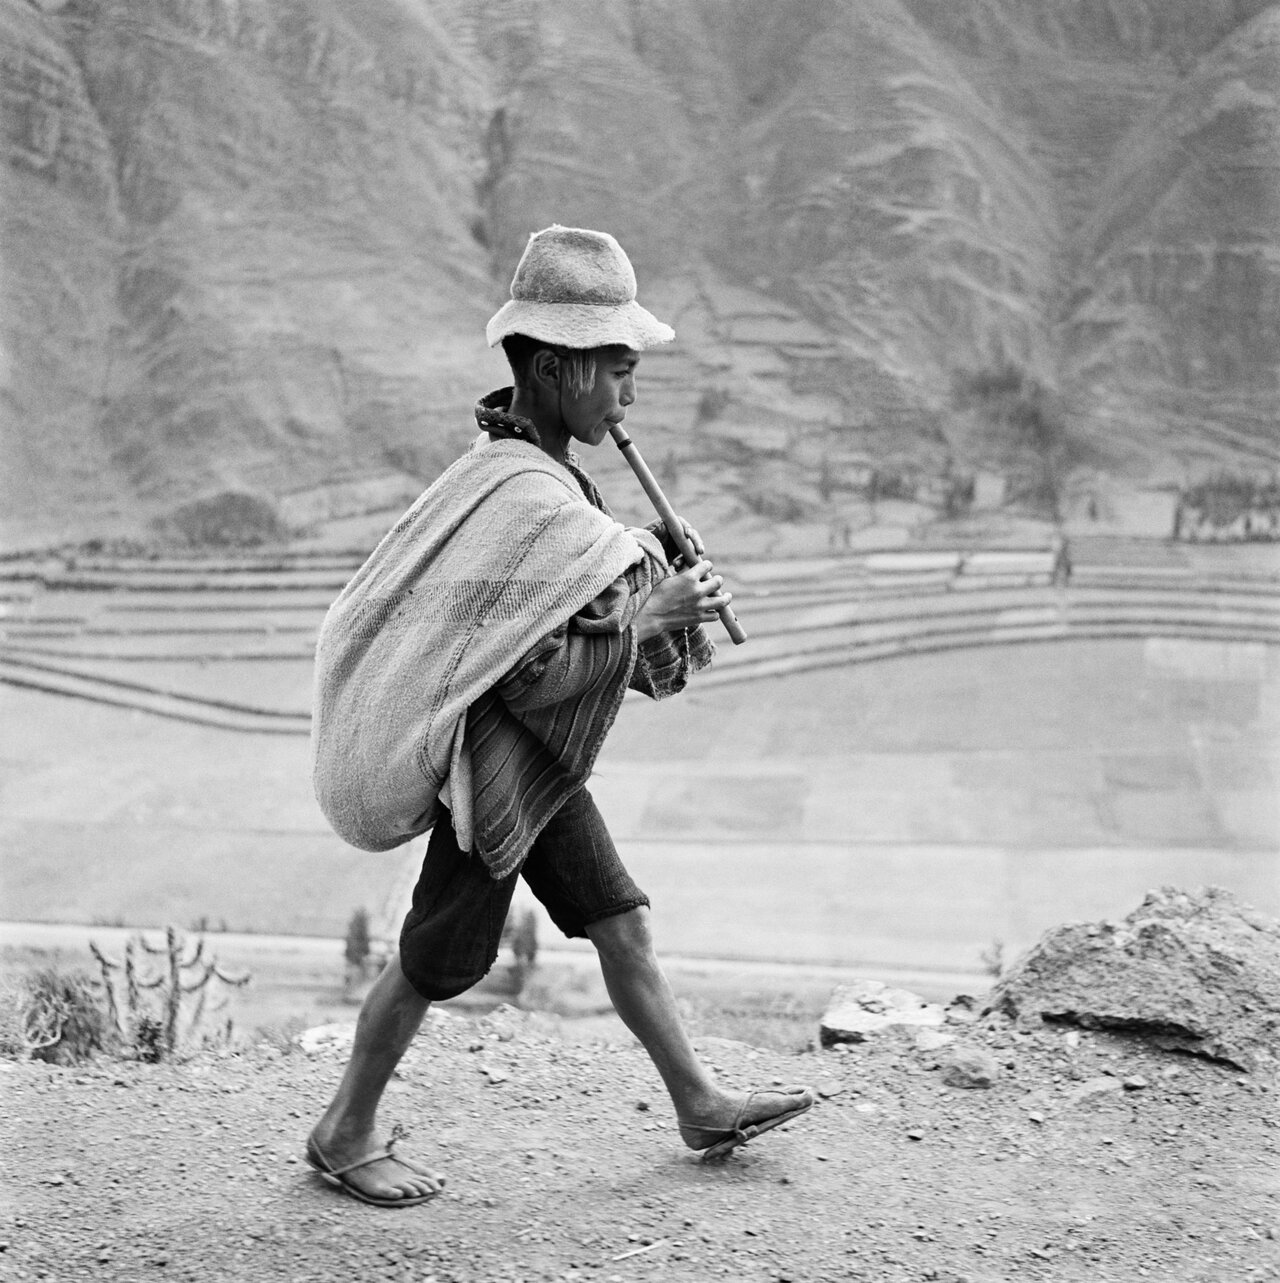 Auf dem Weg nach Cuzco, Peru 1954 © Werner Bischof / Magnum Photos